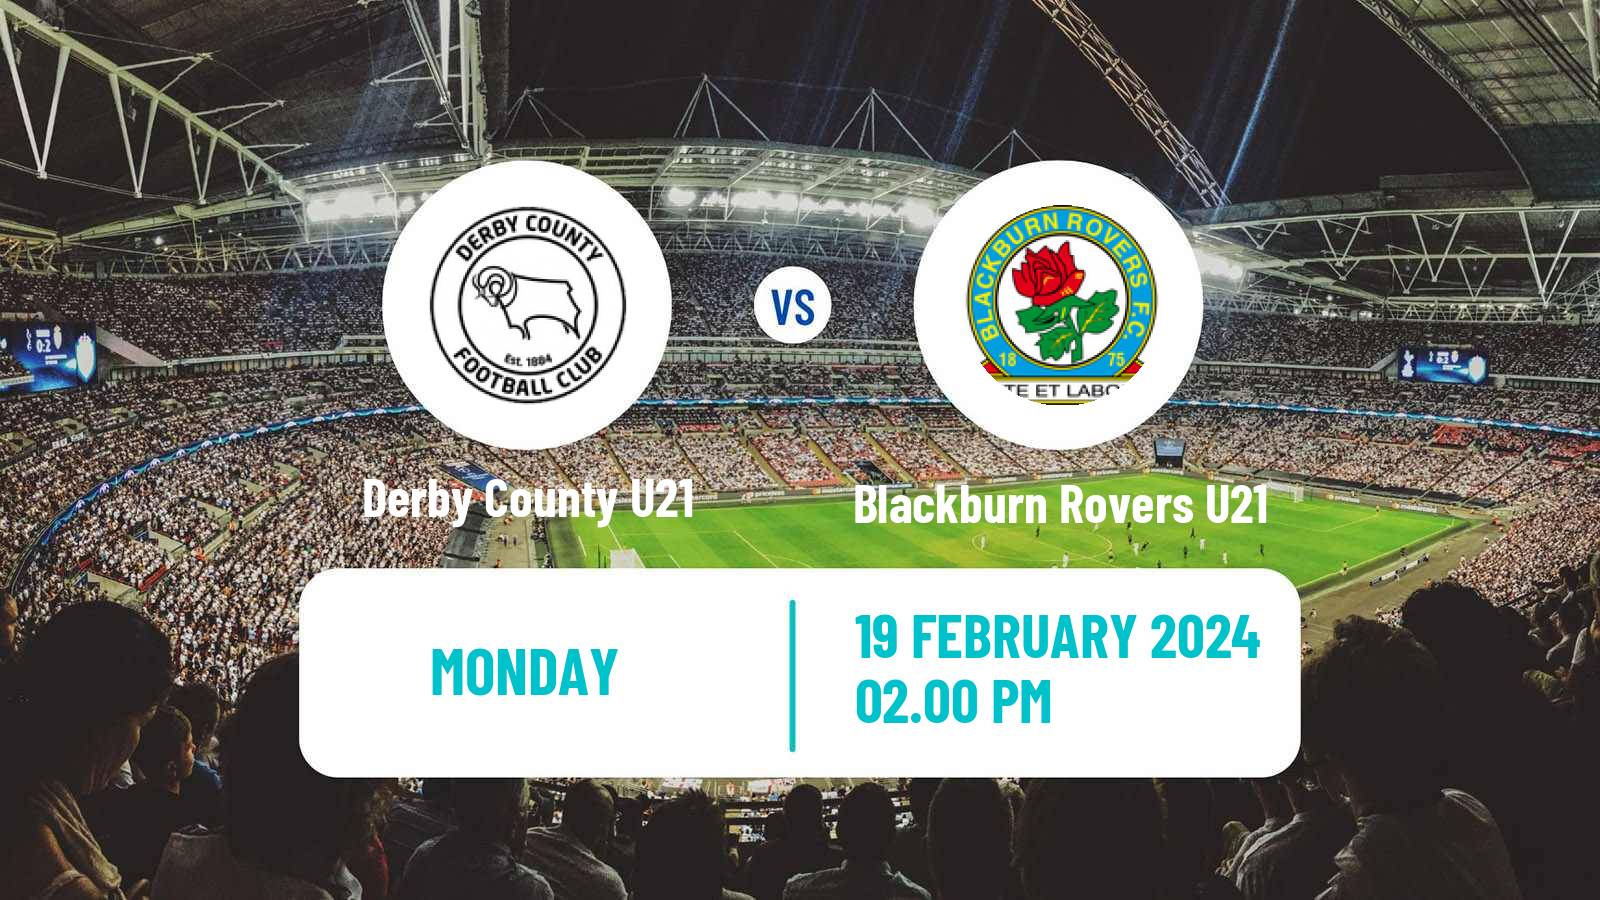 Soccer English Premier League 2 Derby County U21 - Blackburn Rovers U21